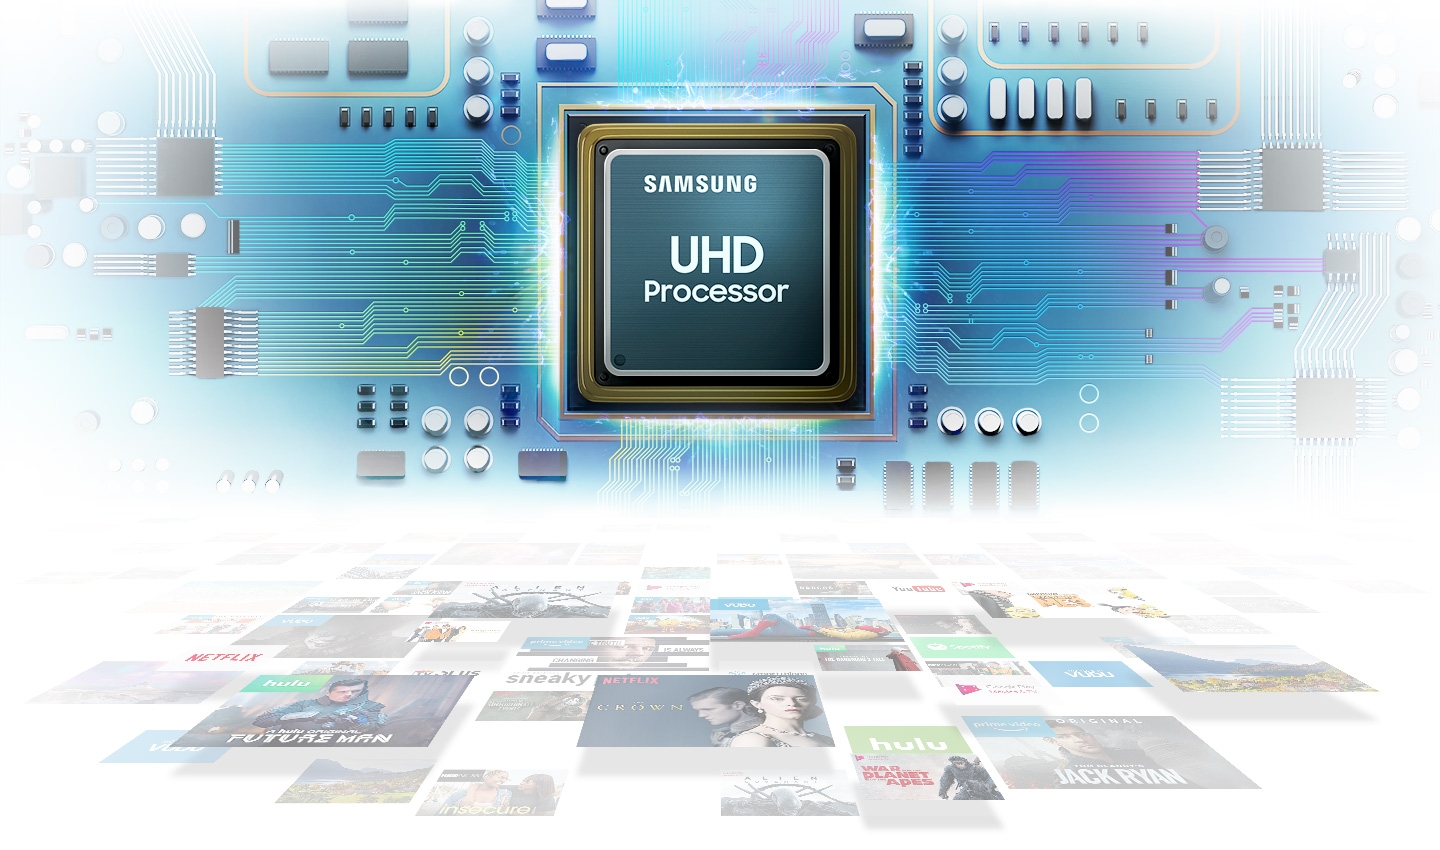 Procesor UHD, oferă o calitate superioară imaginii.